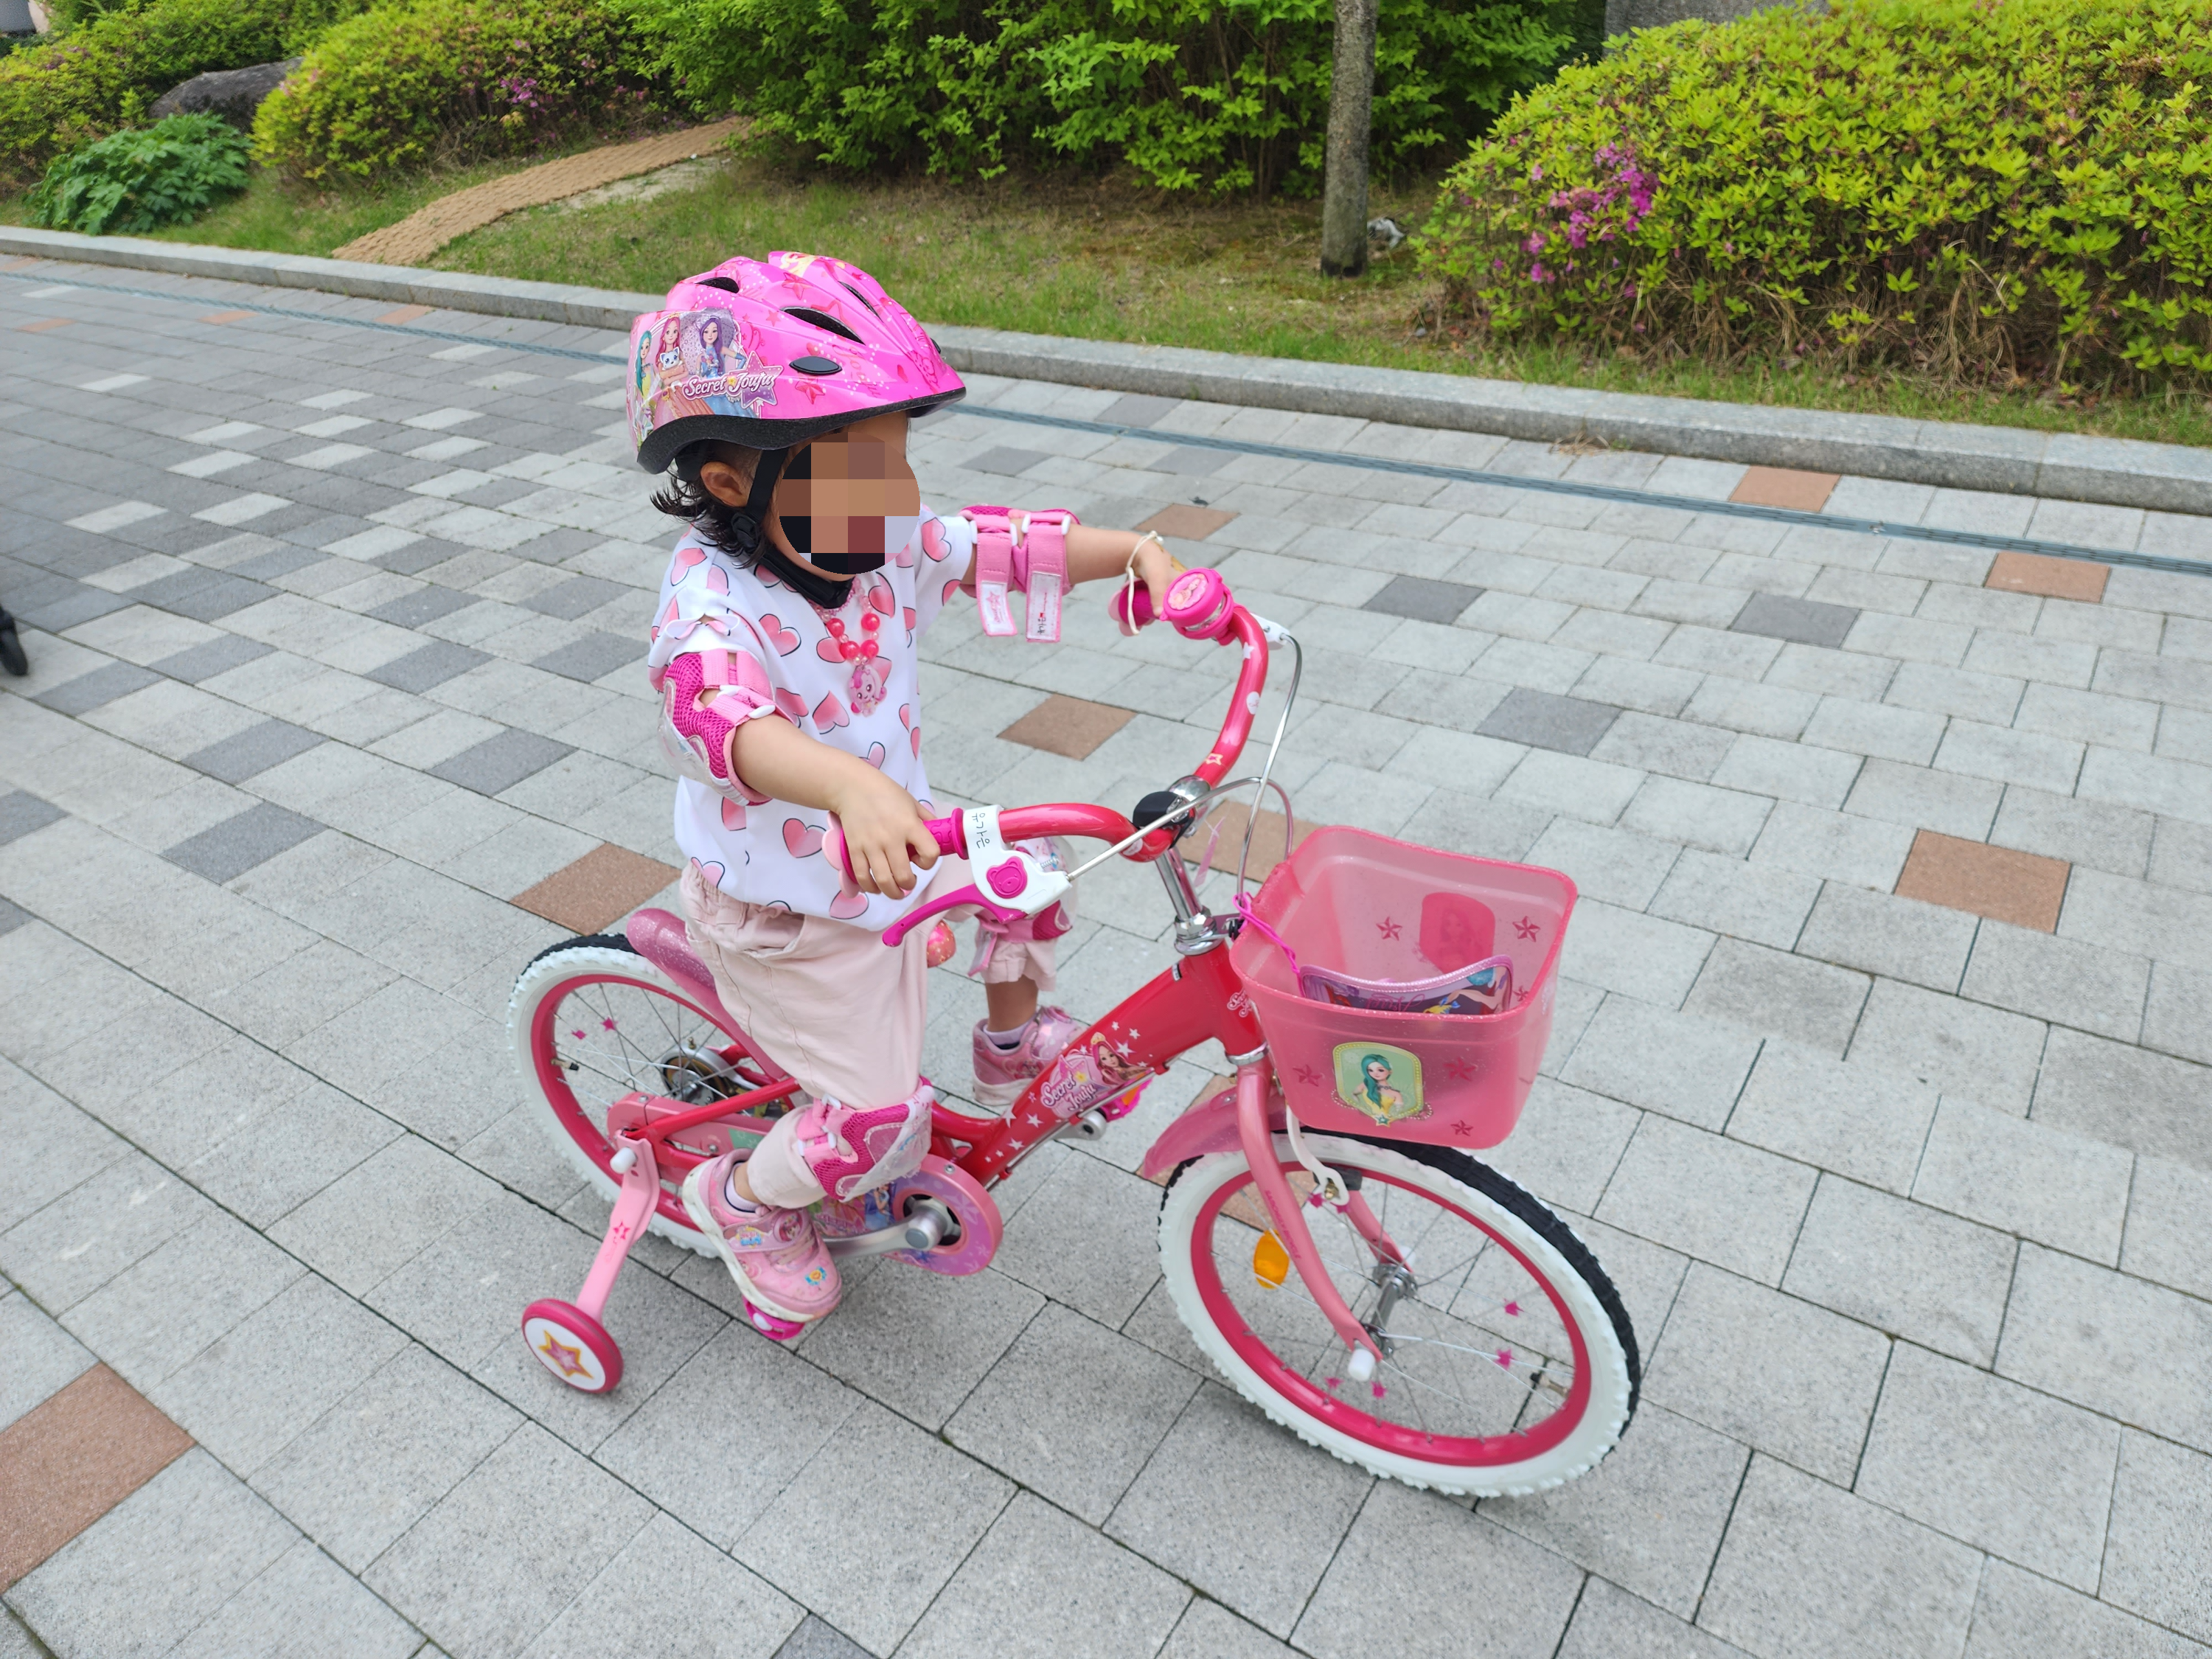 시크릿쥬쥬 자전거를 타고 있는 첫째 사진